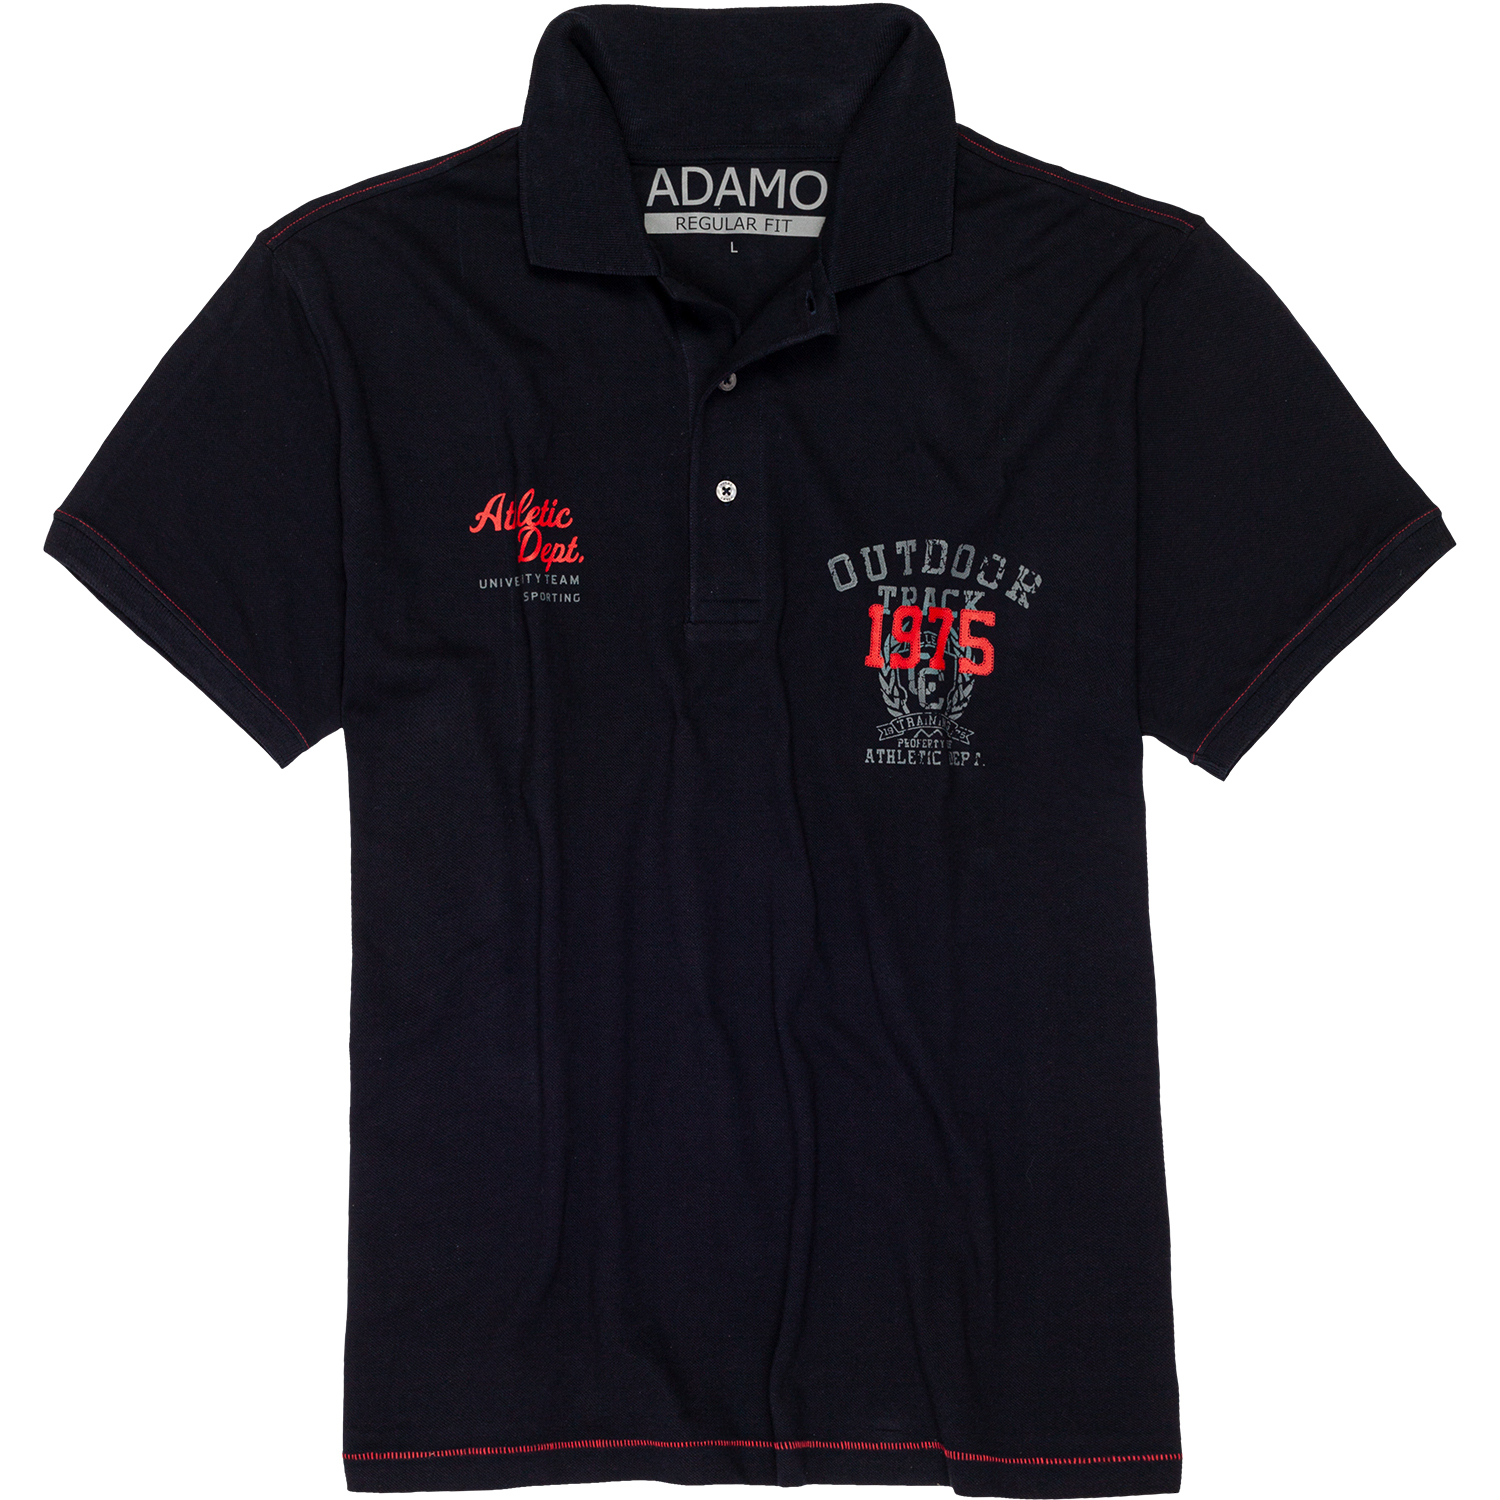 Herren Polohemd Serie Athletic von Adamo kurzarm in Pique-Qualität mit Brustaufdruck bis Übergröße 10XL